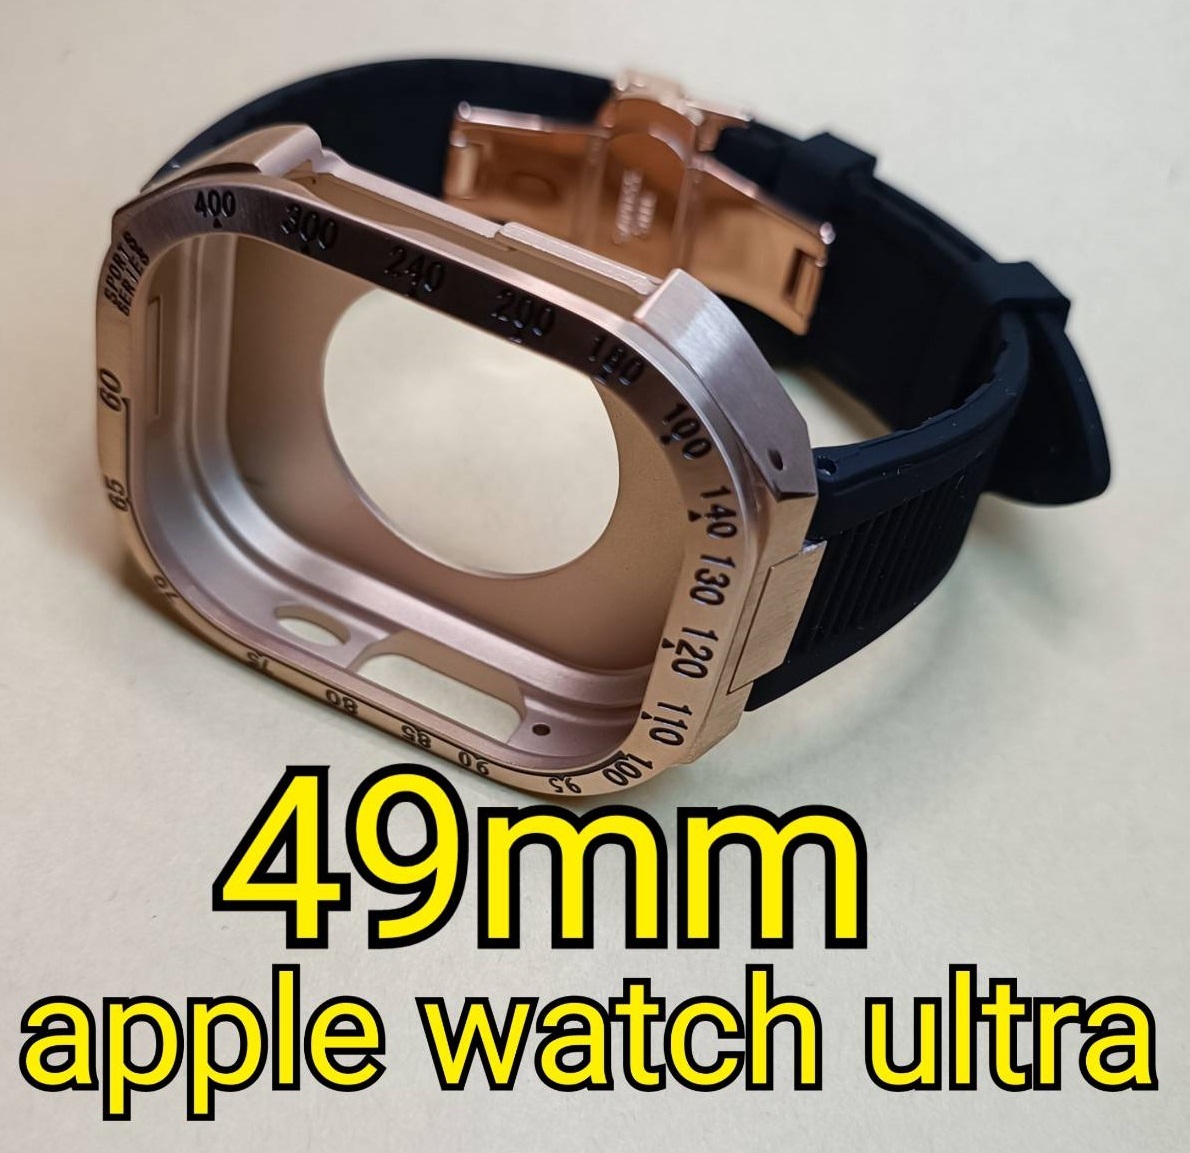 RG 49mm apple watch ultra アップルウォッチウルトラ ケース ダイバー メタル ステンレス カスタム golden concept ゴールデンコンセプト